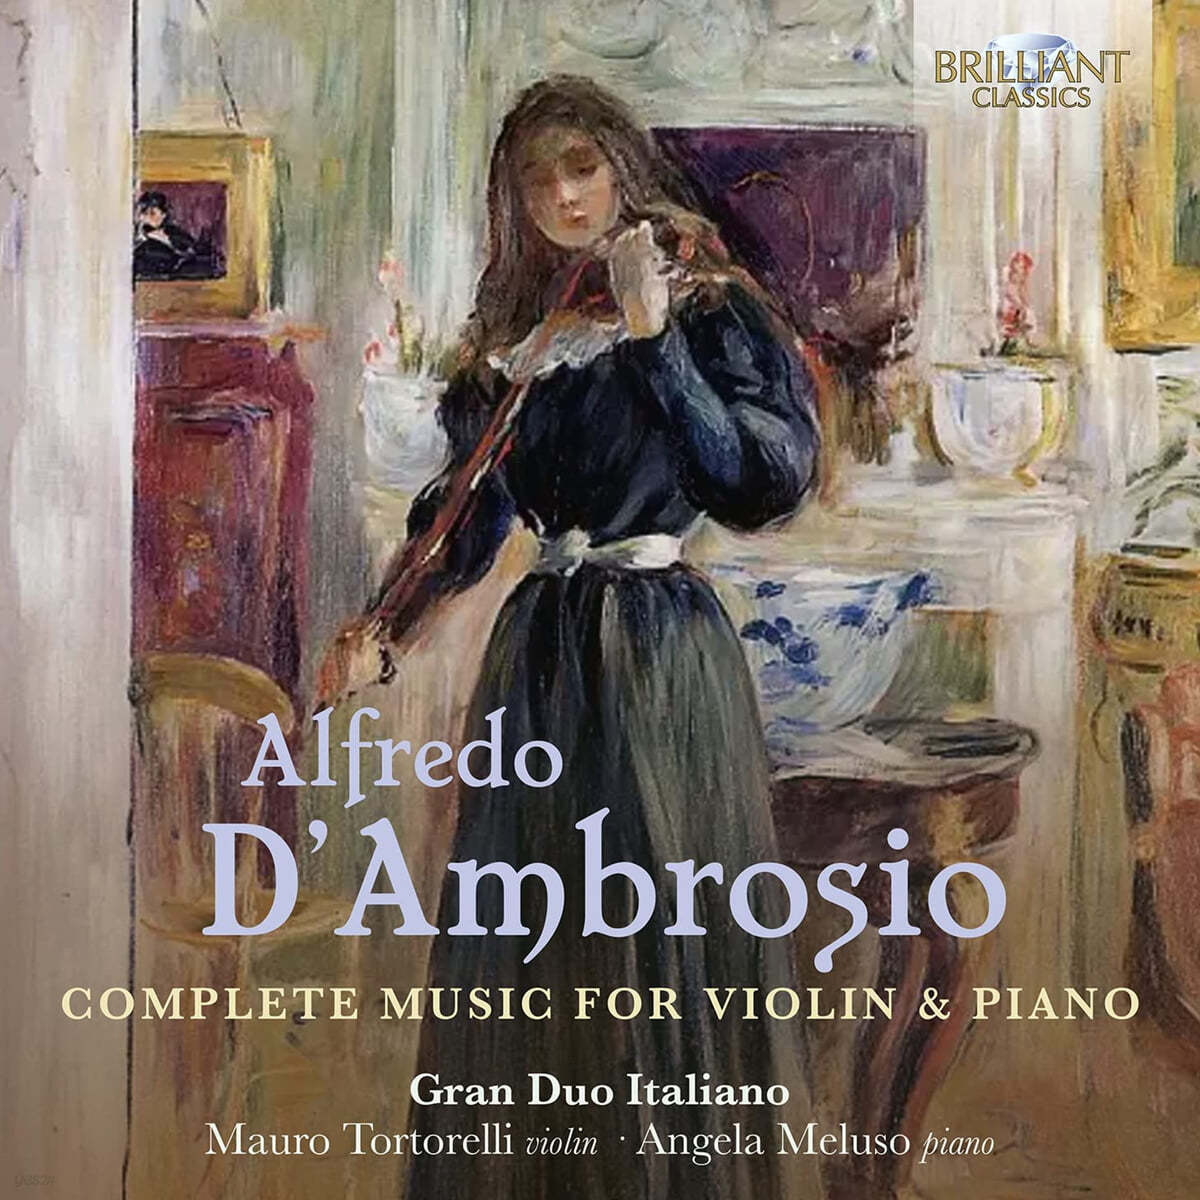 알프레도 담브로시오: 바이올린과 피아노를 위한 작품 전곡 (Alfredo D'Ambrosio: Complete Music for Violin & Piano)